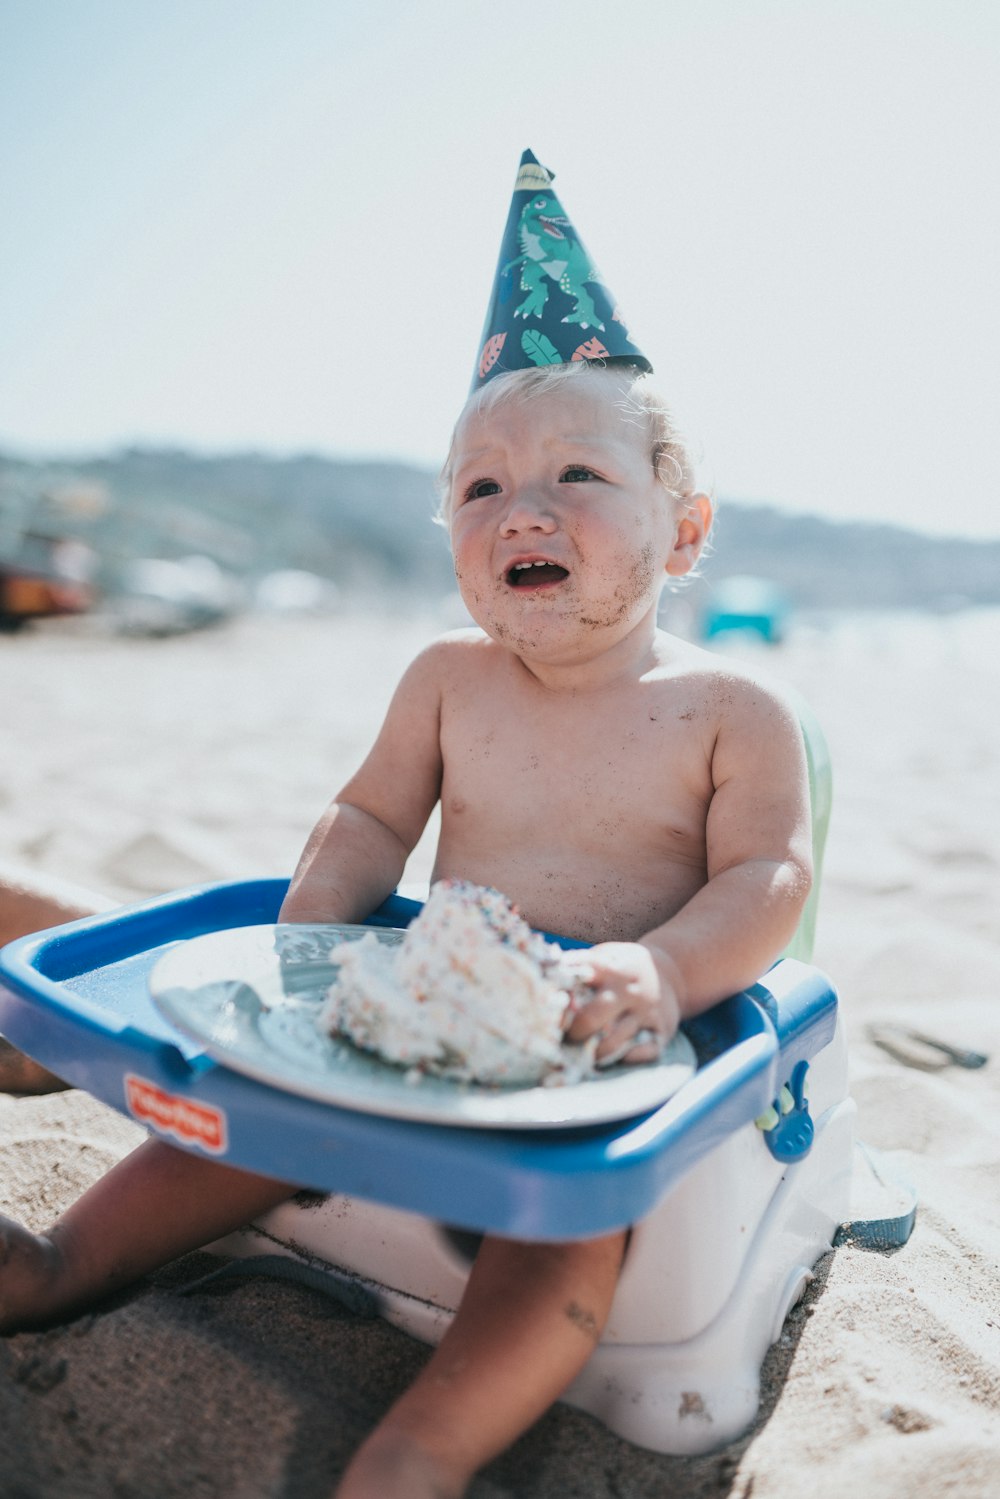 낮 동안 해변의 파란색 플라스틱 욕조에 앉아 있는 토플리스 아기